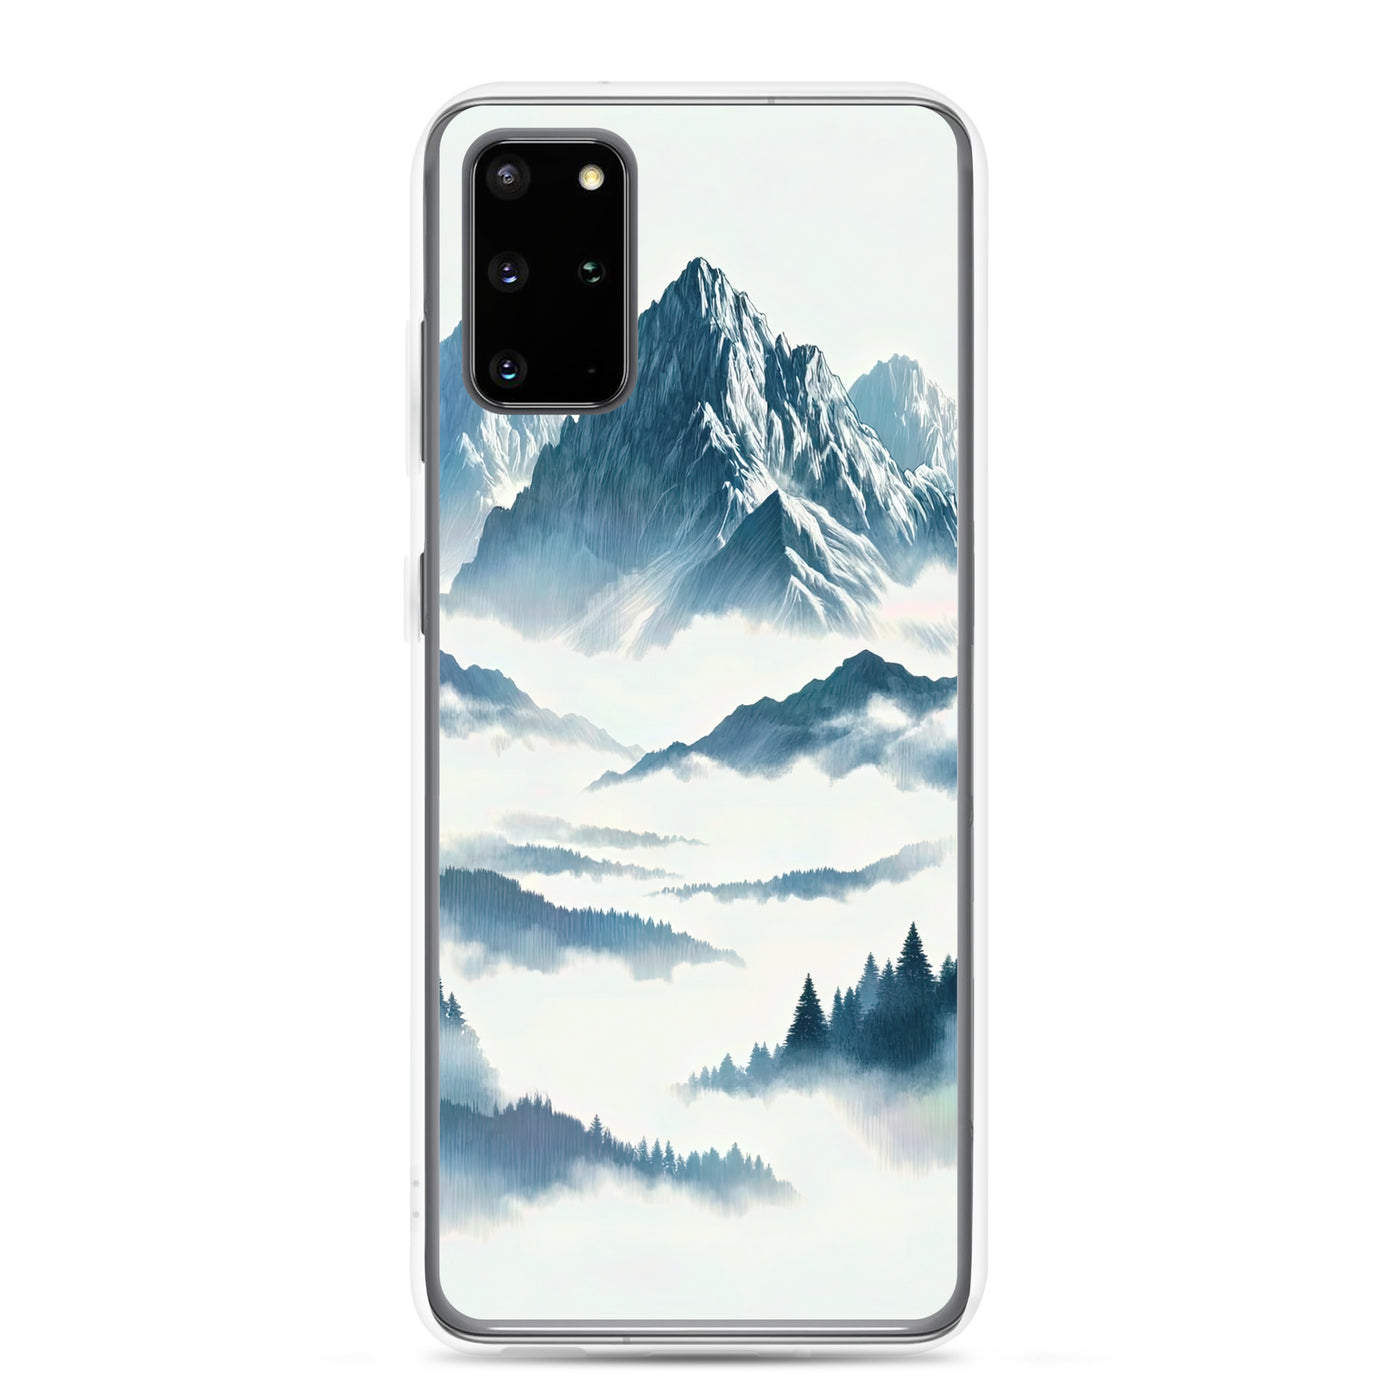 Nebeliger Alpenmorgen-Essenz, verdeckte Täler und Wälder - Samsung Schutzhülle (durchsichtig) berge xxx yyy zzz Samsung Galaxy S20 Plus